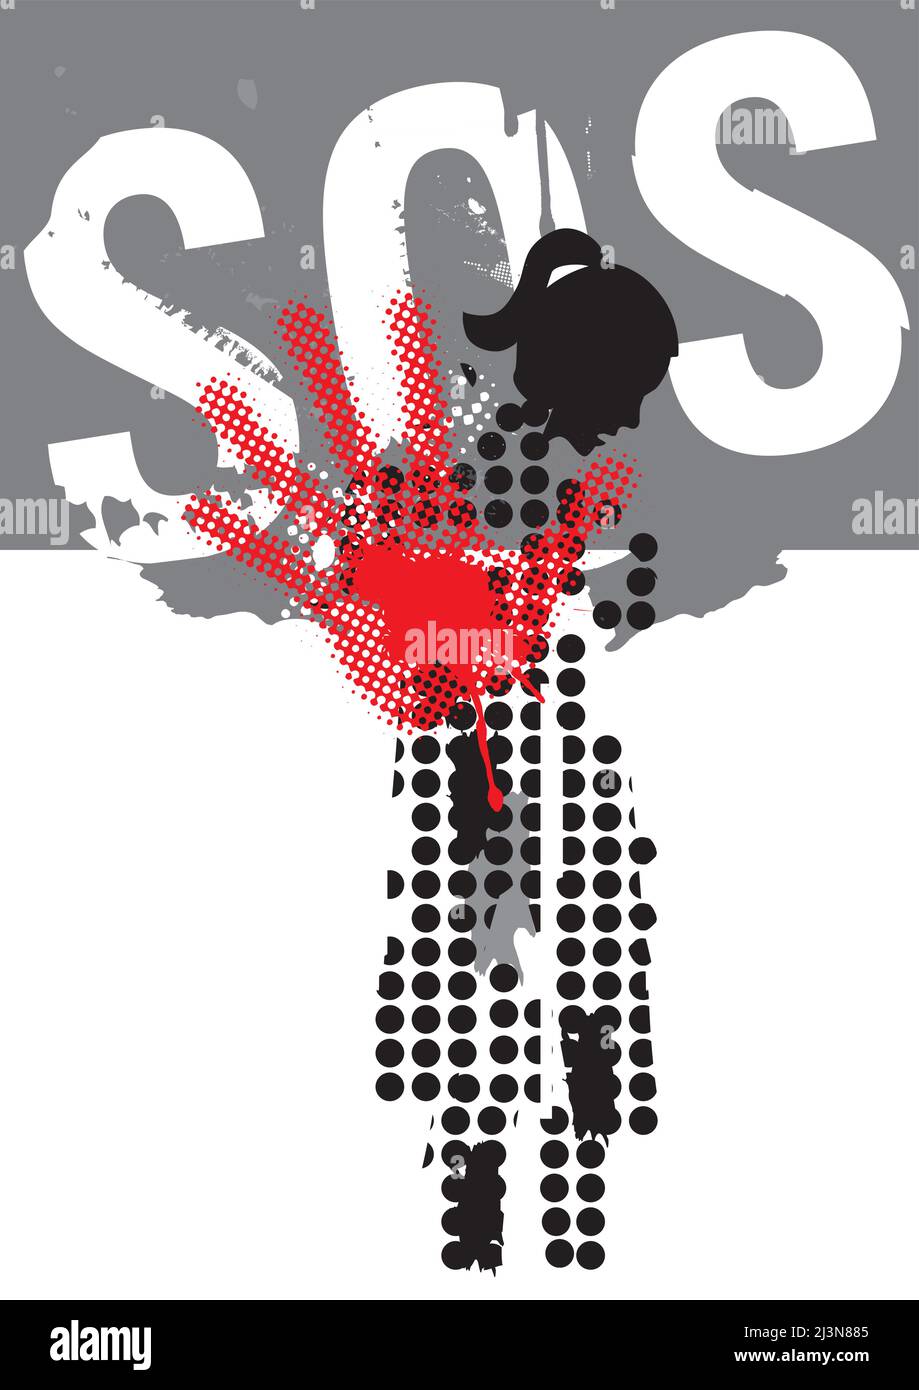 SOS-Aufruf zur Hilfe, Frau, Opfer von Gewalt und Krieg. Grunge stilisierte Silhuette der verängstigten, depressiven Frau mit der Hand in defensiver Position. Stock Vektor